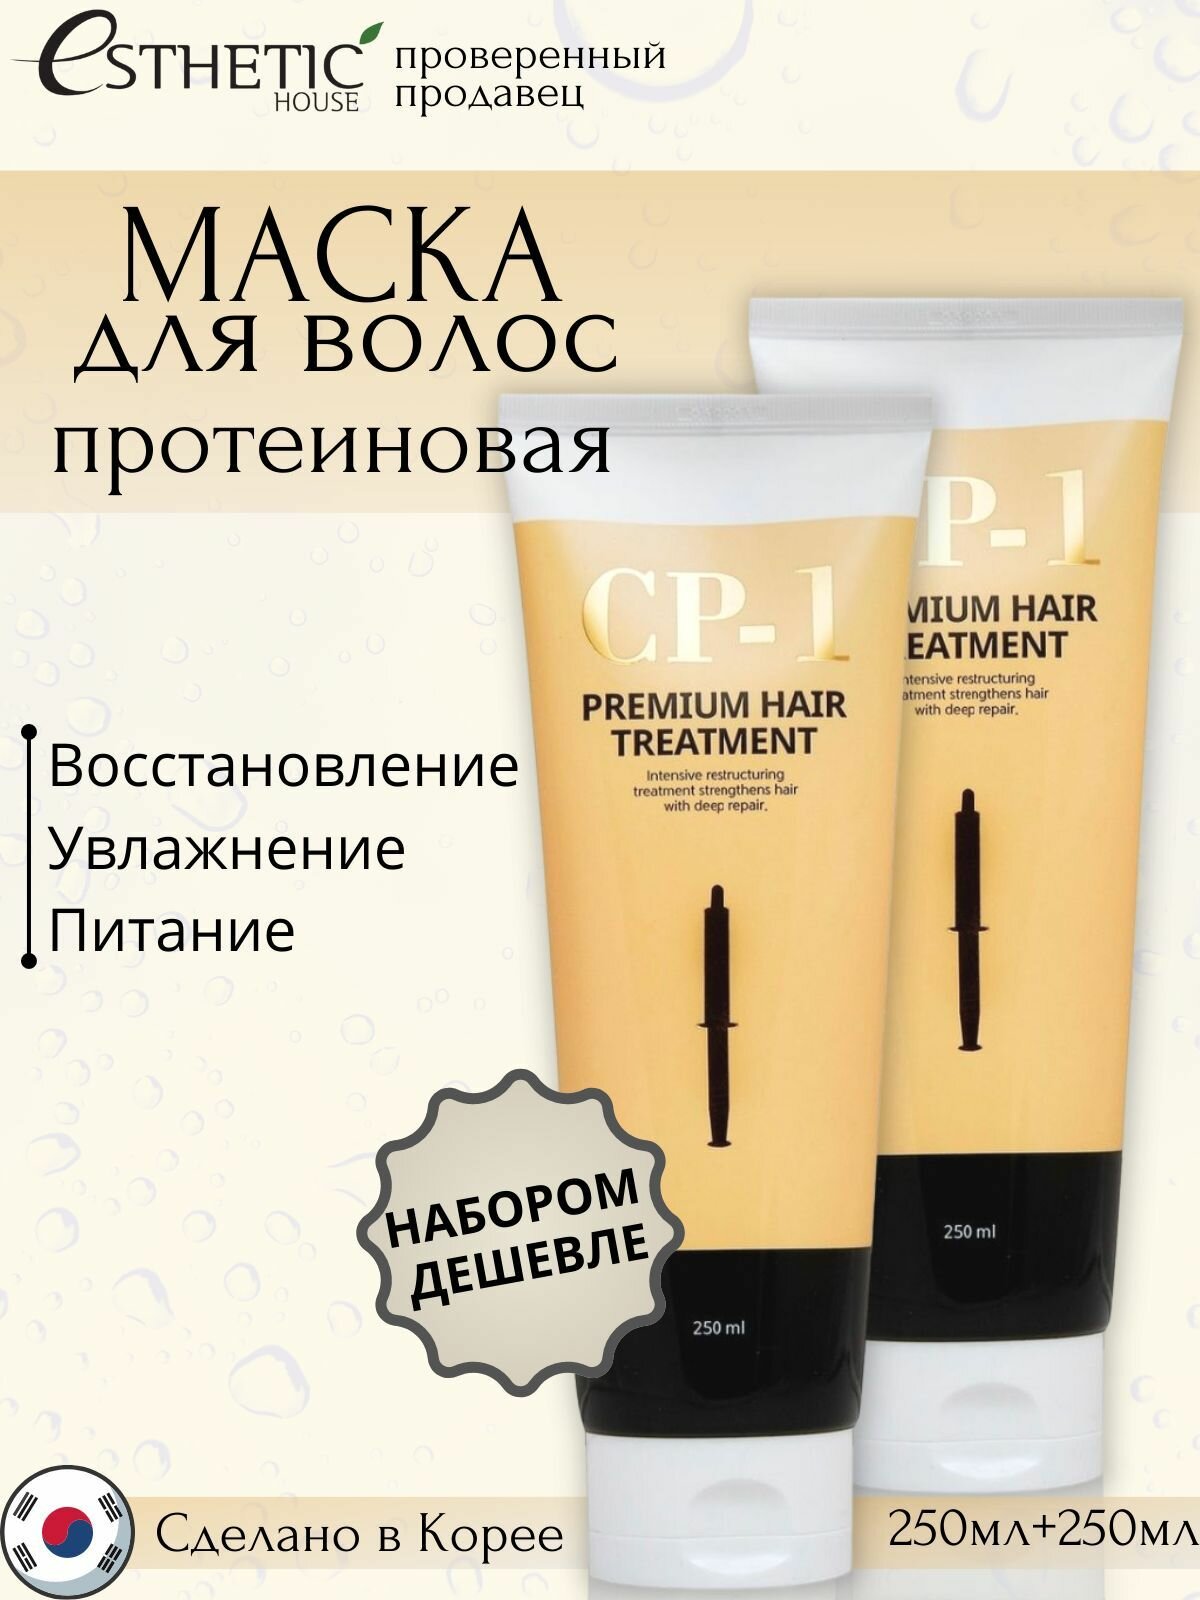 ESTHETIC HOUSE 2 шт. Протеиновая маска для волос, питающая и увлажняющая, корейская, для лечения поврежденных, сухих, часто окрашиваемых волос, Premium Protein Treatment (протеиновая), Корея- 250 мл